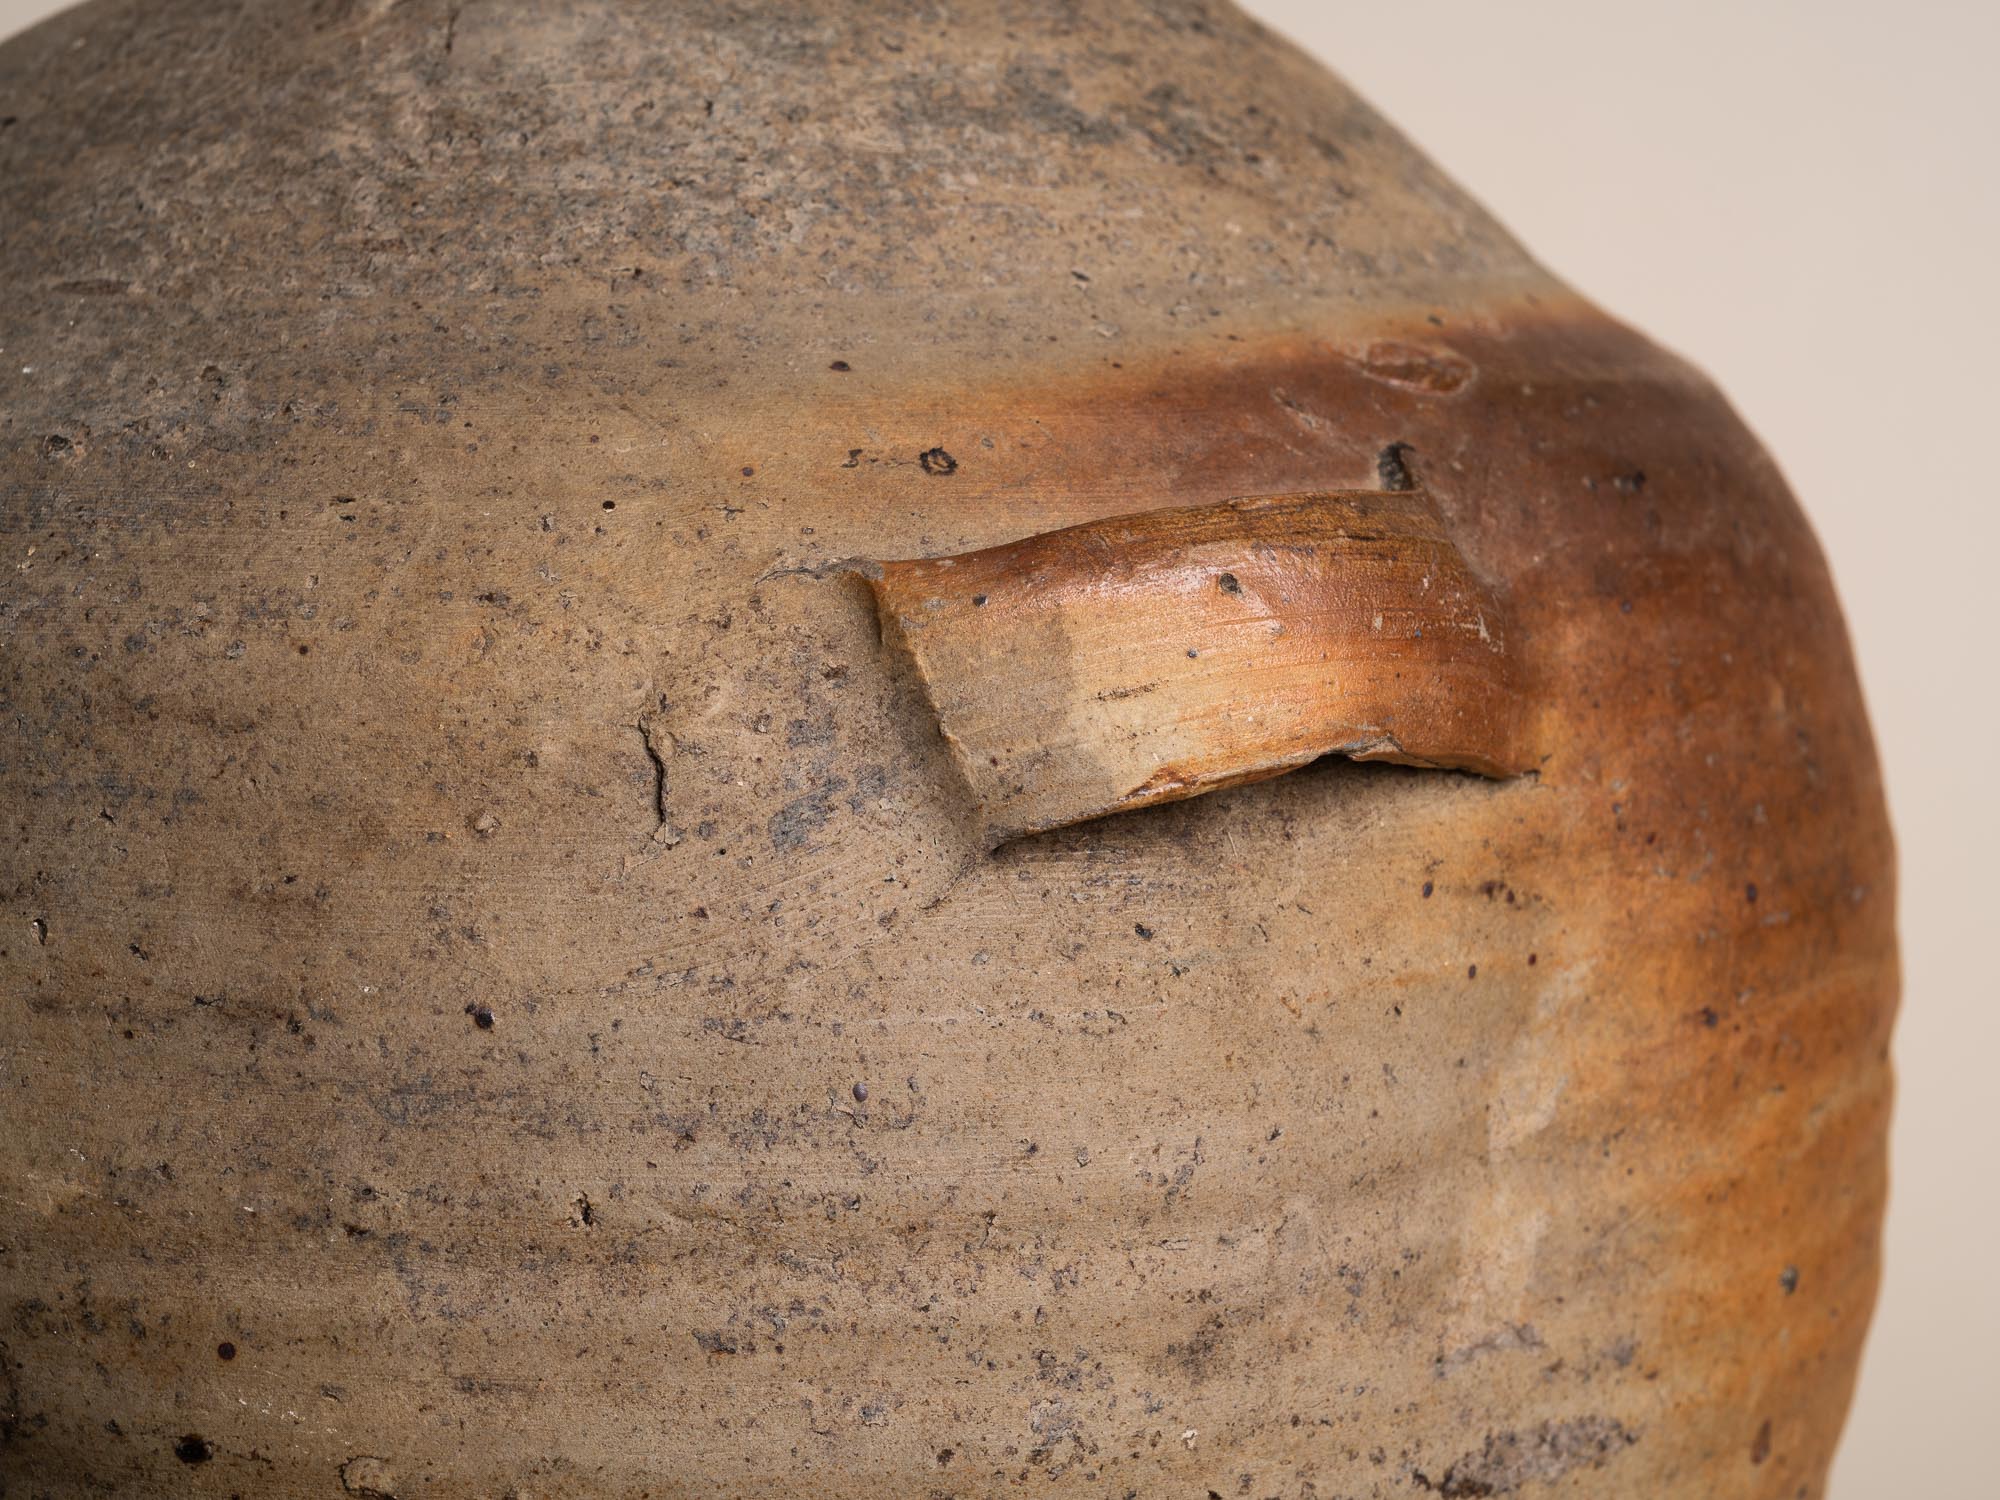 Bombonne à quatre anses en grès de la Borne, France (XVIIe / XVIIIe siècles)..Stoneware folk bottle pot by anonymous La Borne potters, France (17th / 18th century)